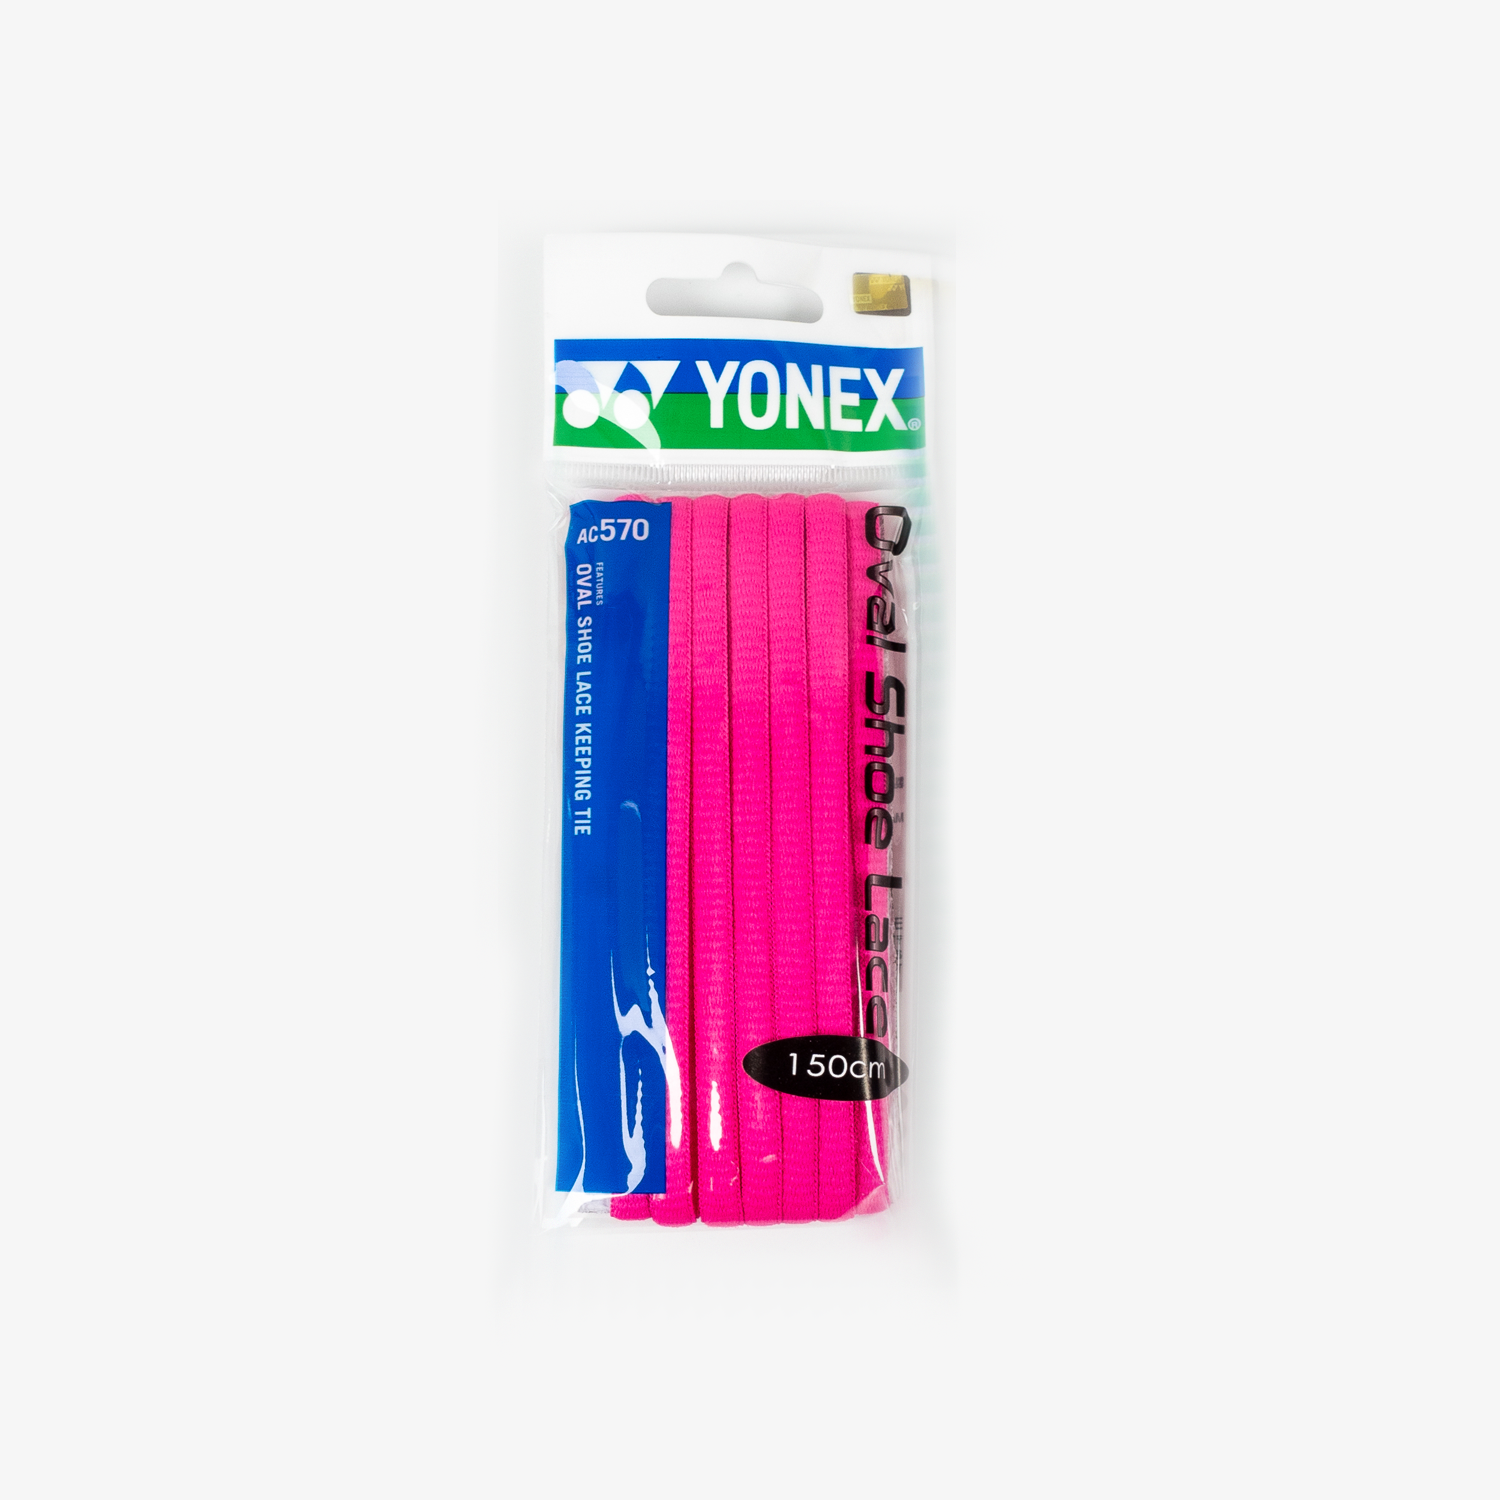 Yonex AC570 Oval Shoelaces (7 Colors)